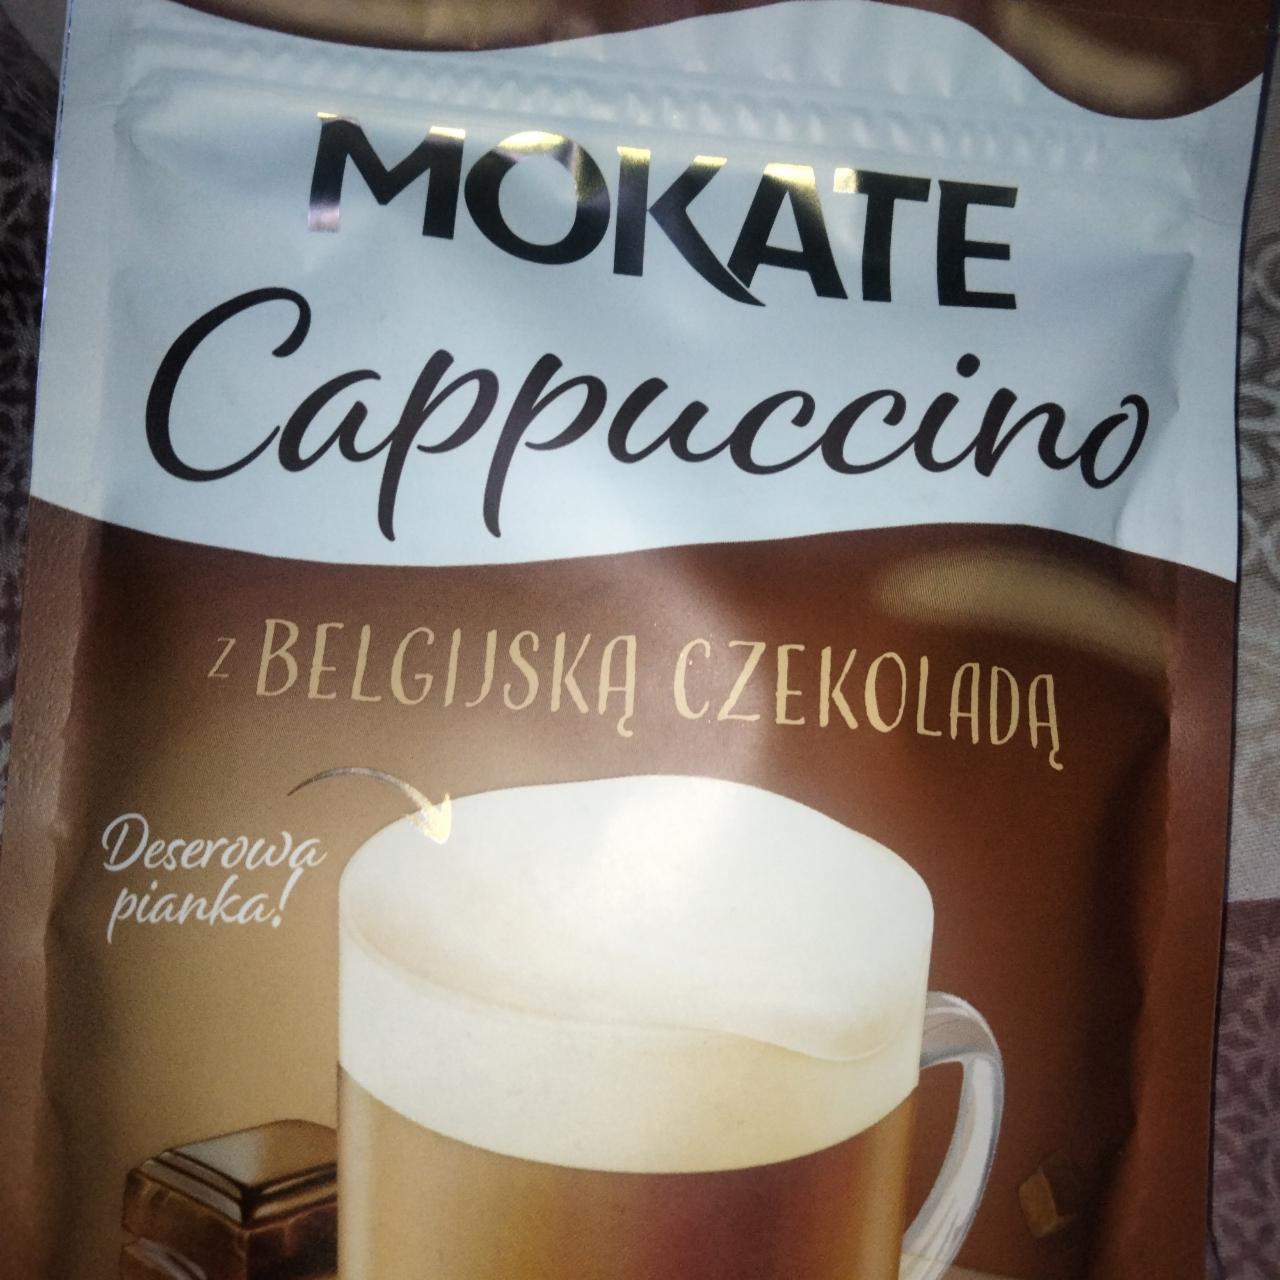 Zdjęcia - cappucino z belgijską czekoladą Mokate